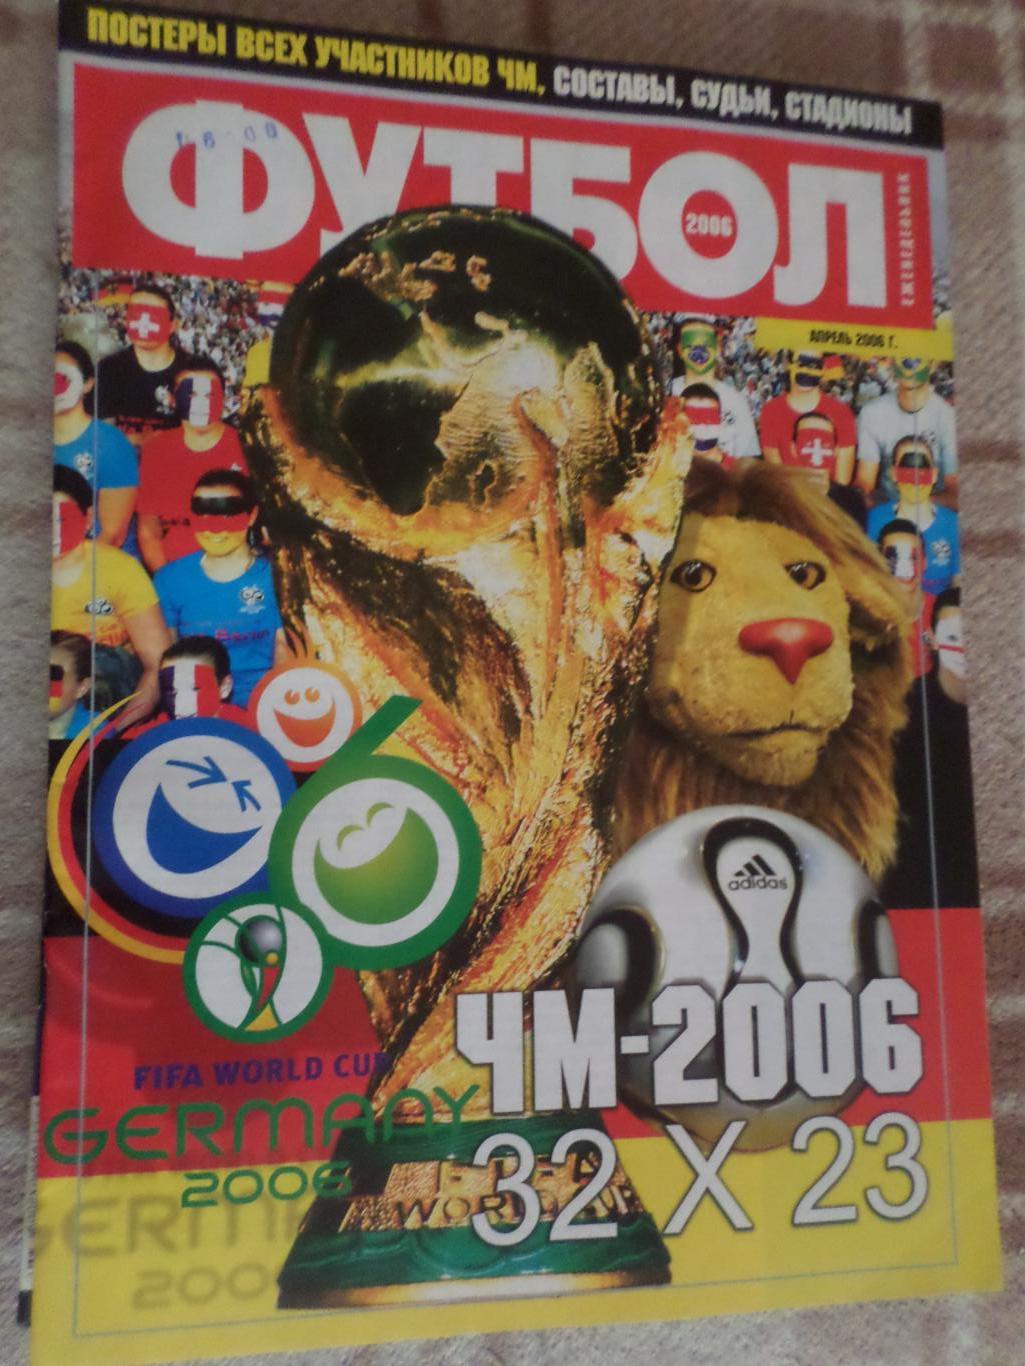 Еженедельник Футбол (Киев) спецвыпуск 2006 г Чемпионат мира по футболу 2006 г